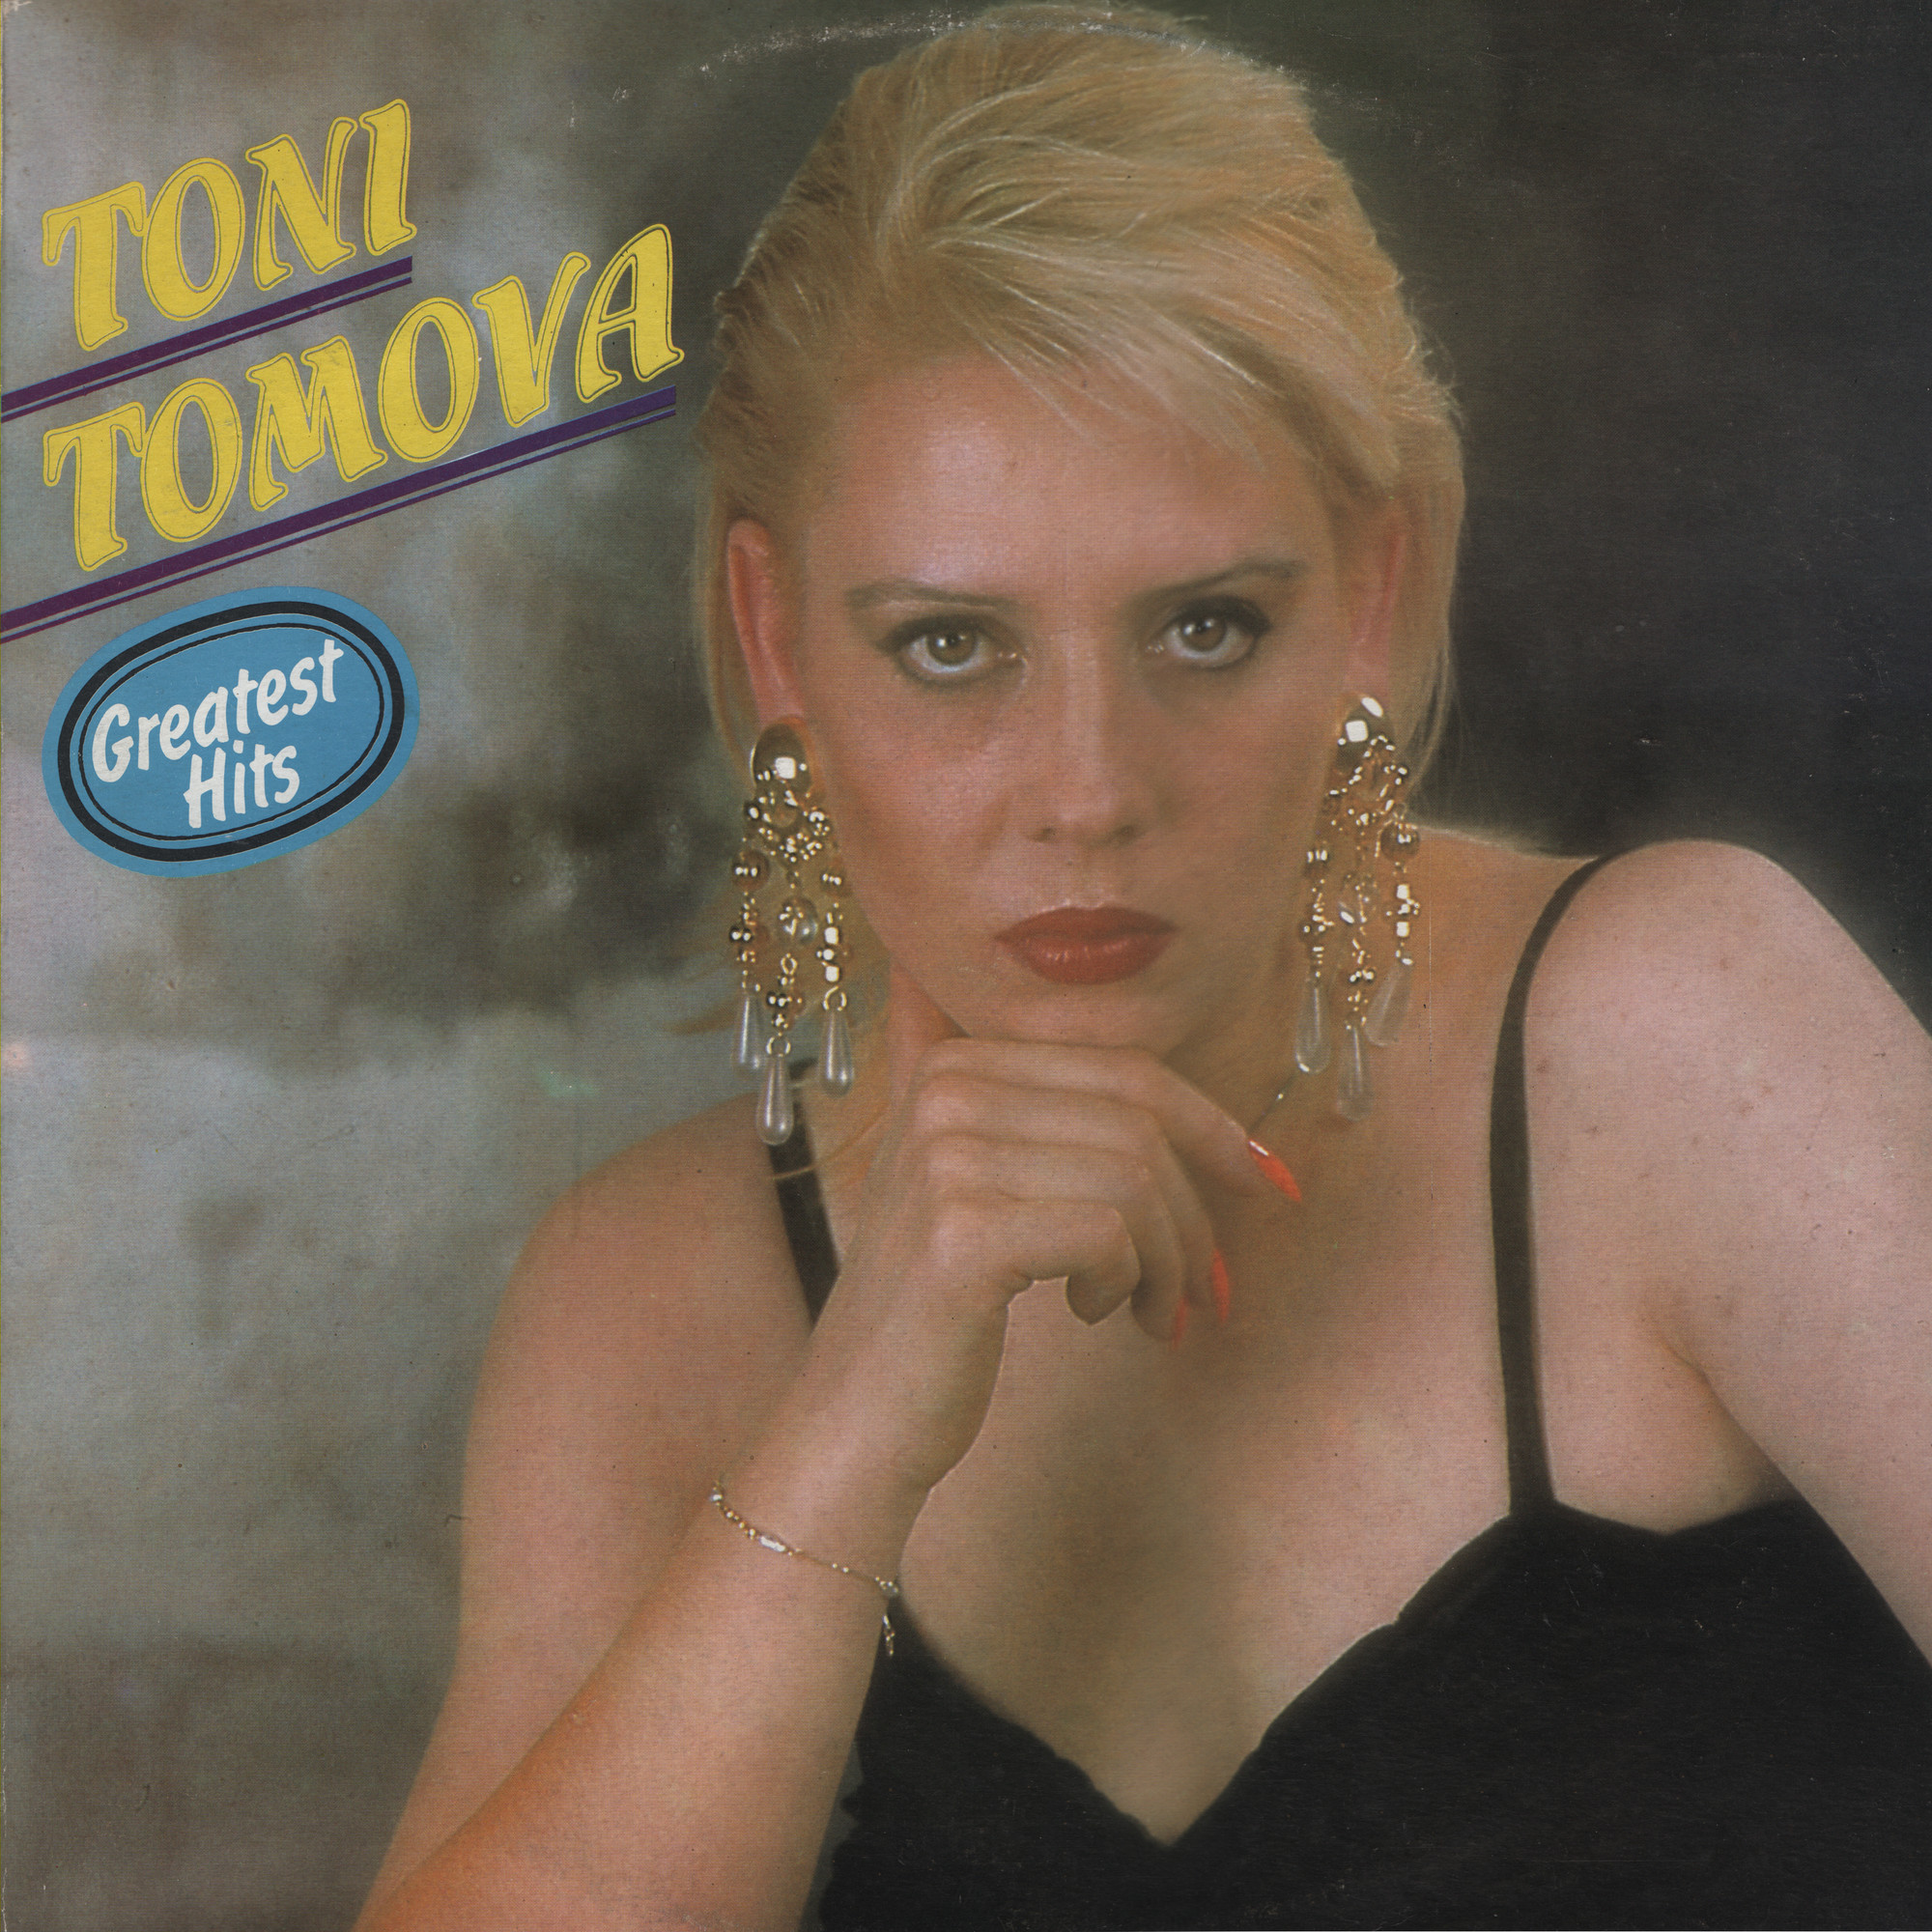 Тони Томова. Greatest Hits